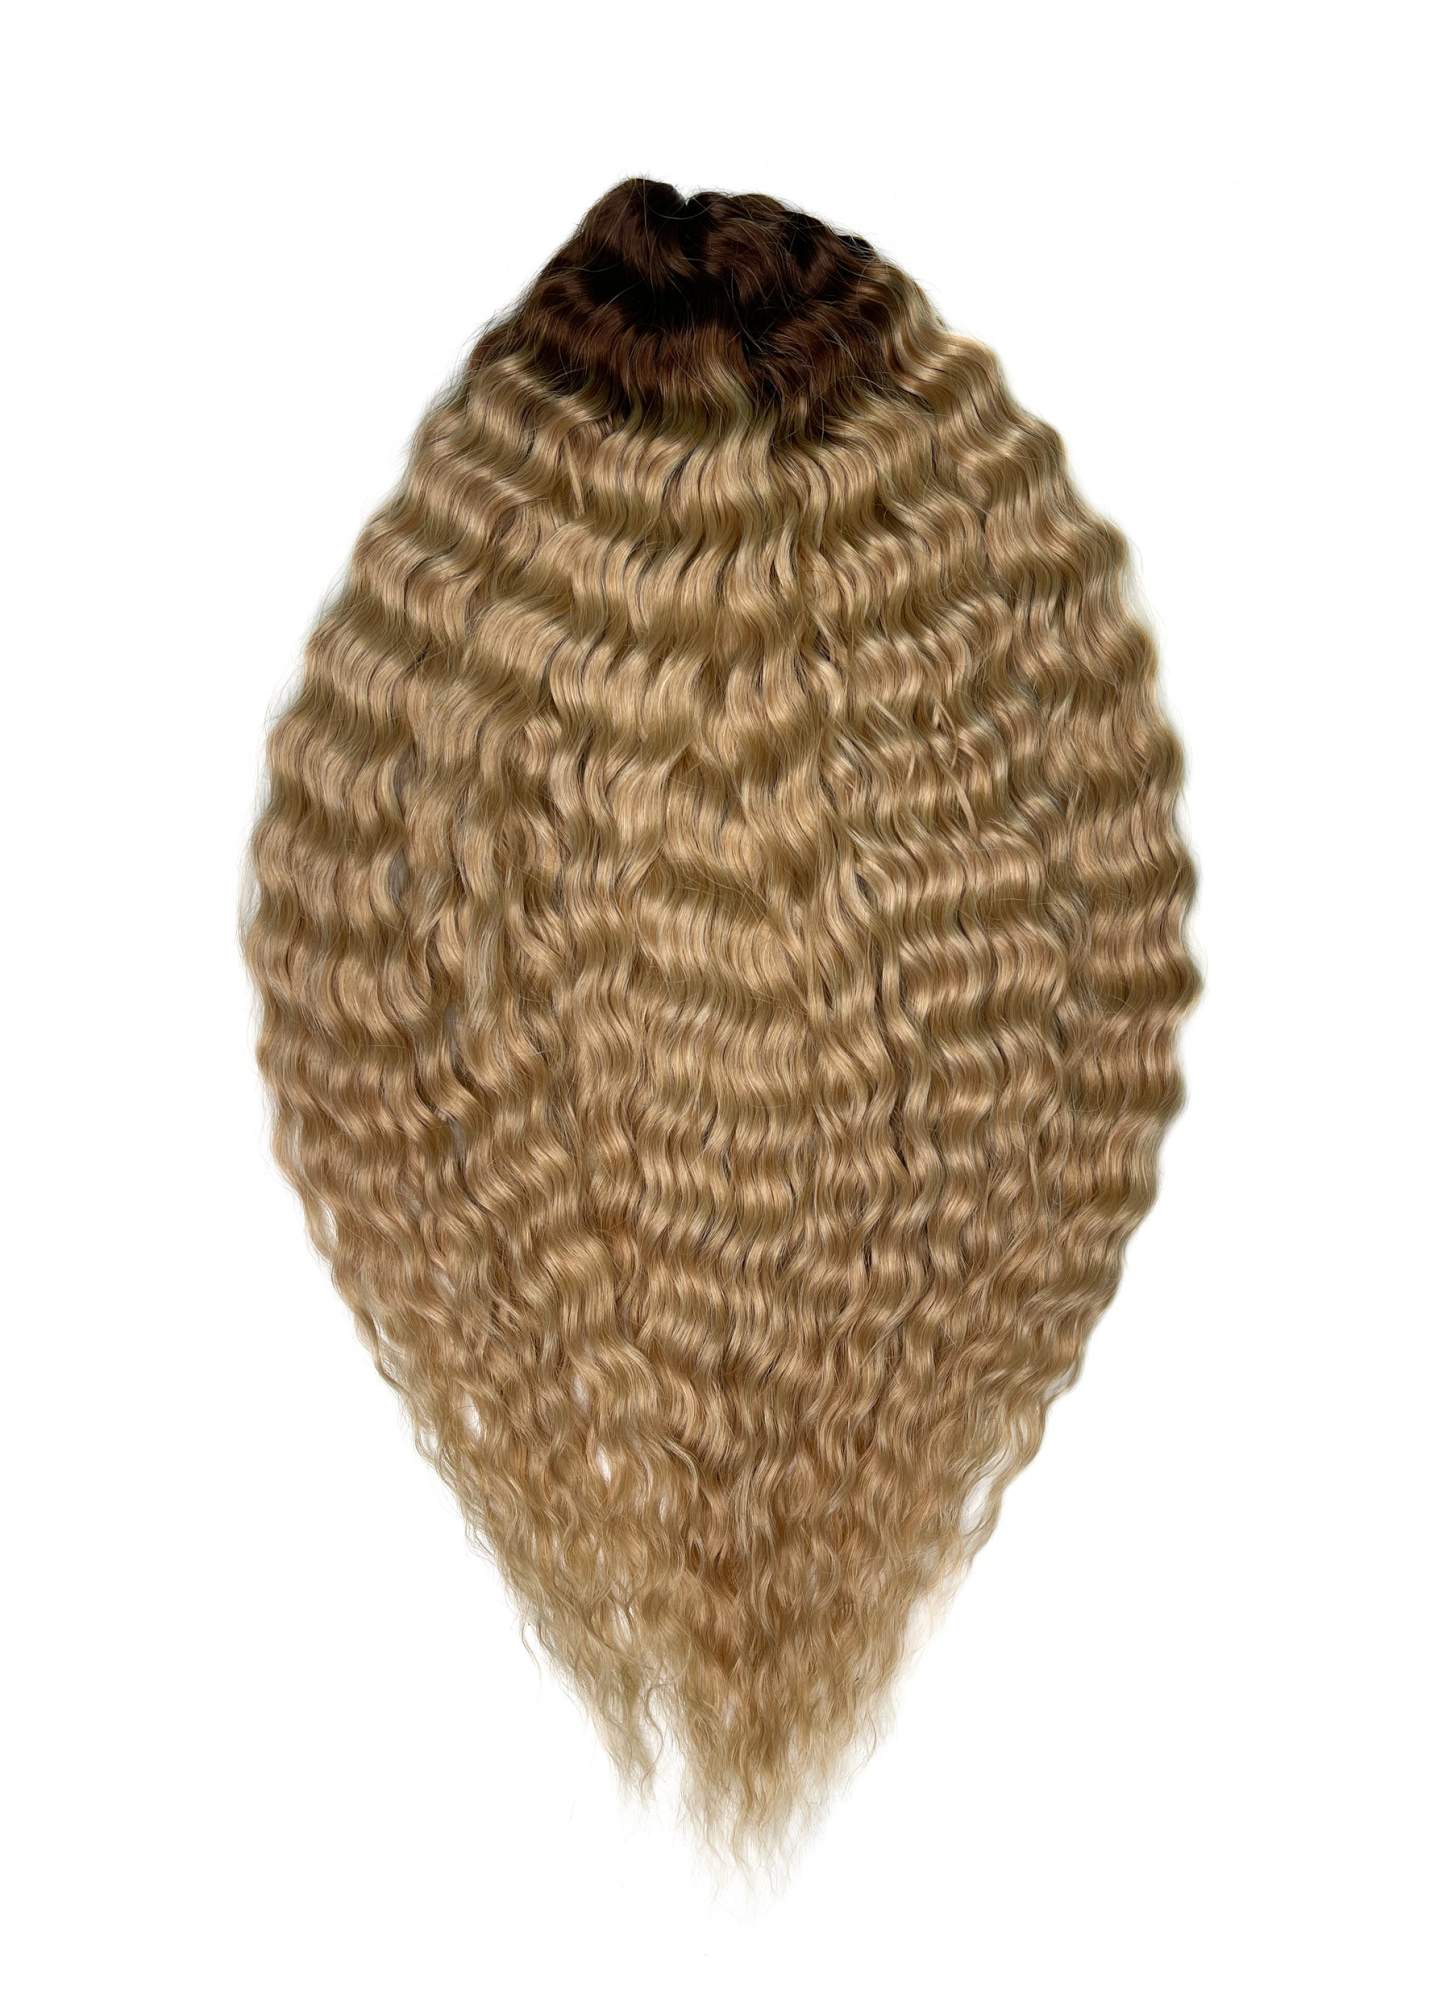 Афрокудри для плетения волос Ariel цвет TT-linen 55 русый длина 55см вес 300г афрокудри для плетения волос ariel t16 60a cерый длина 55см вес 300г